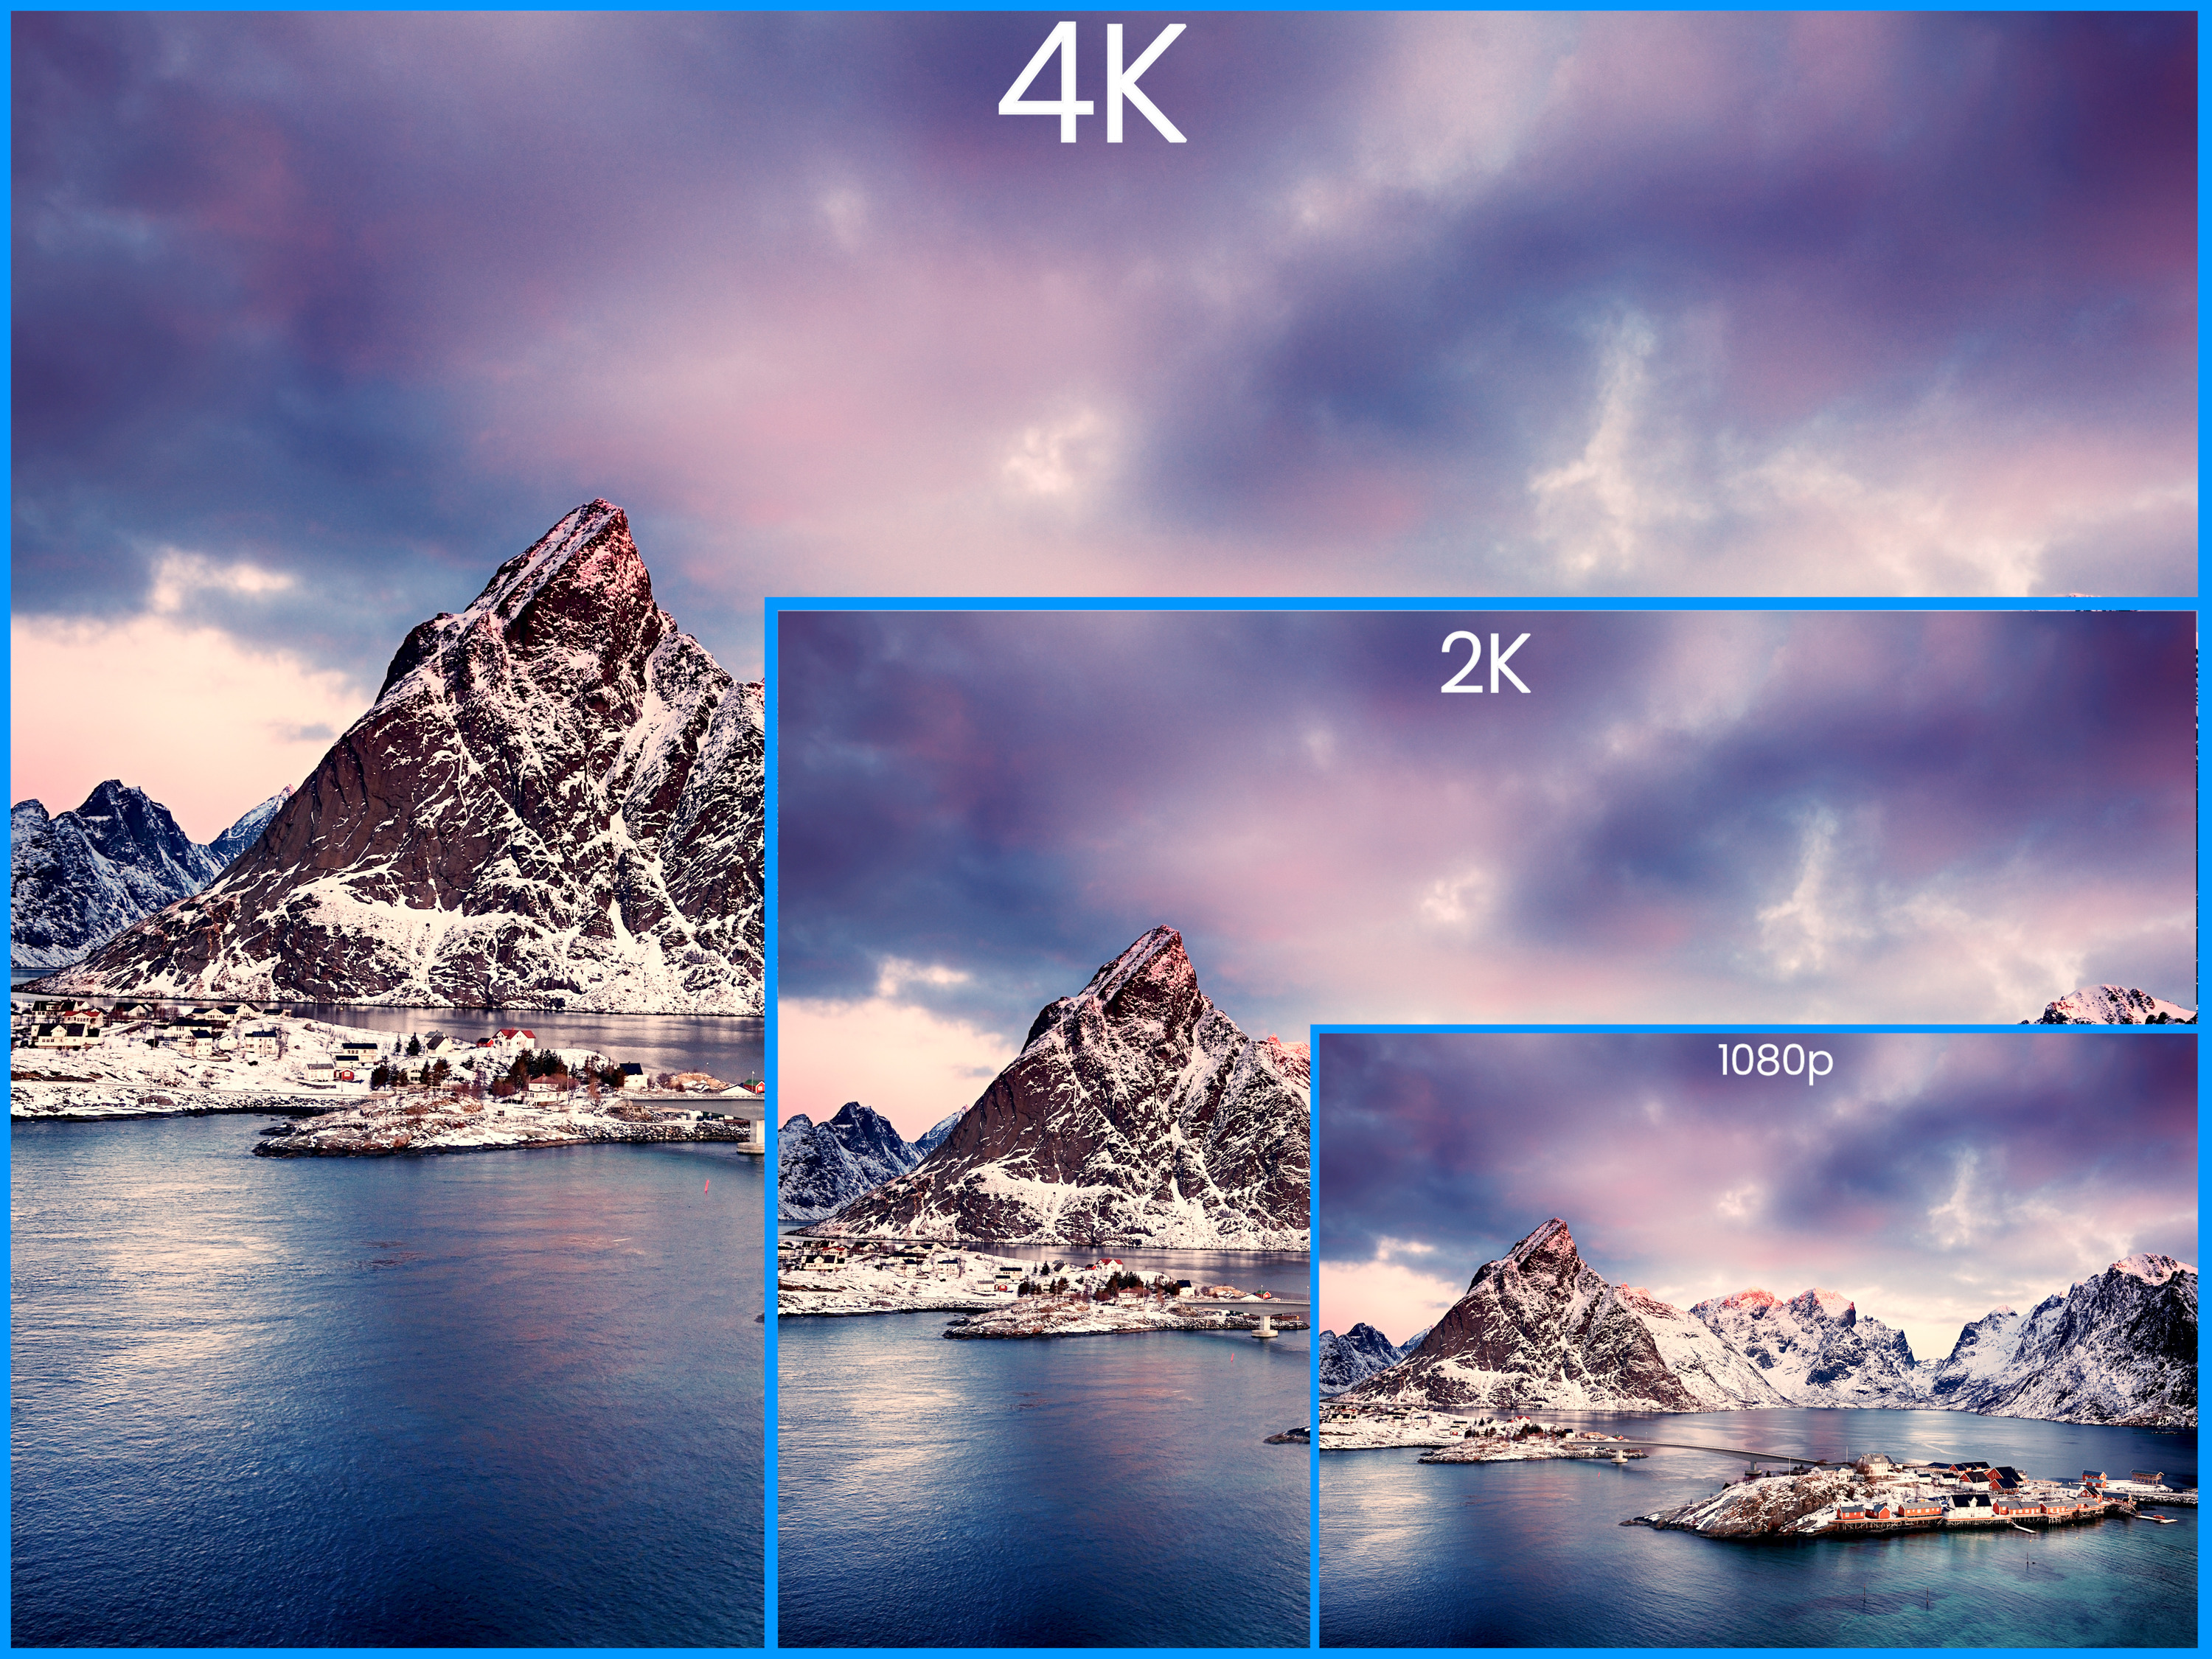 4K 8MP resolution comparison